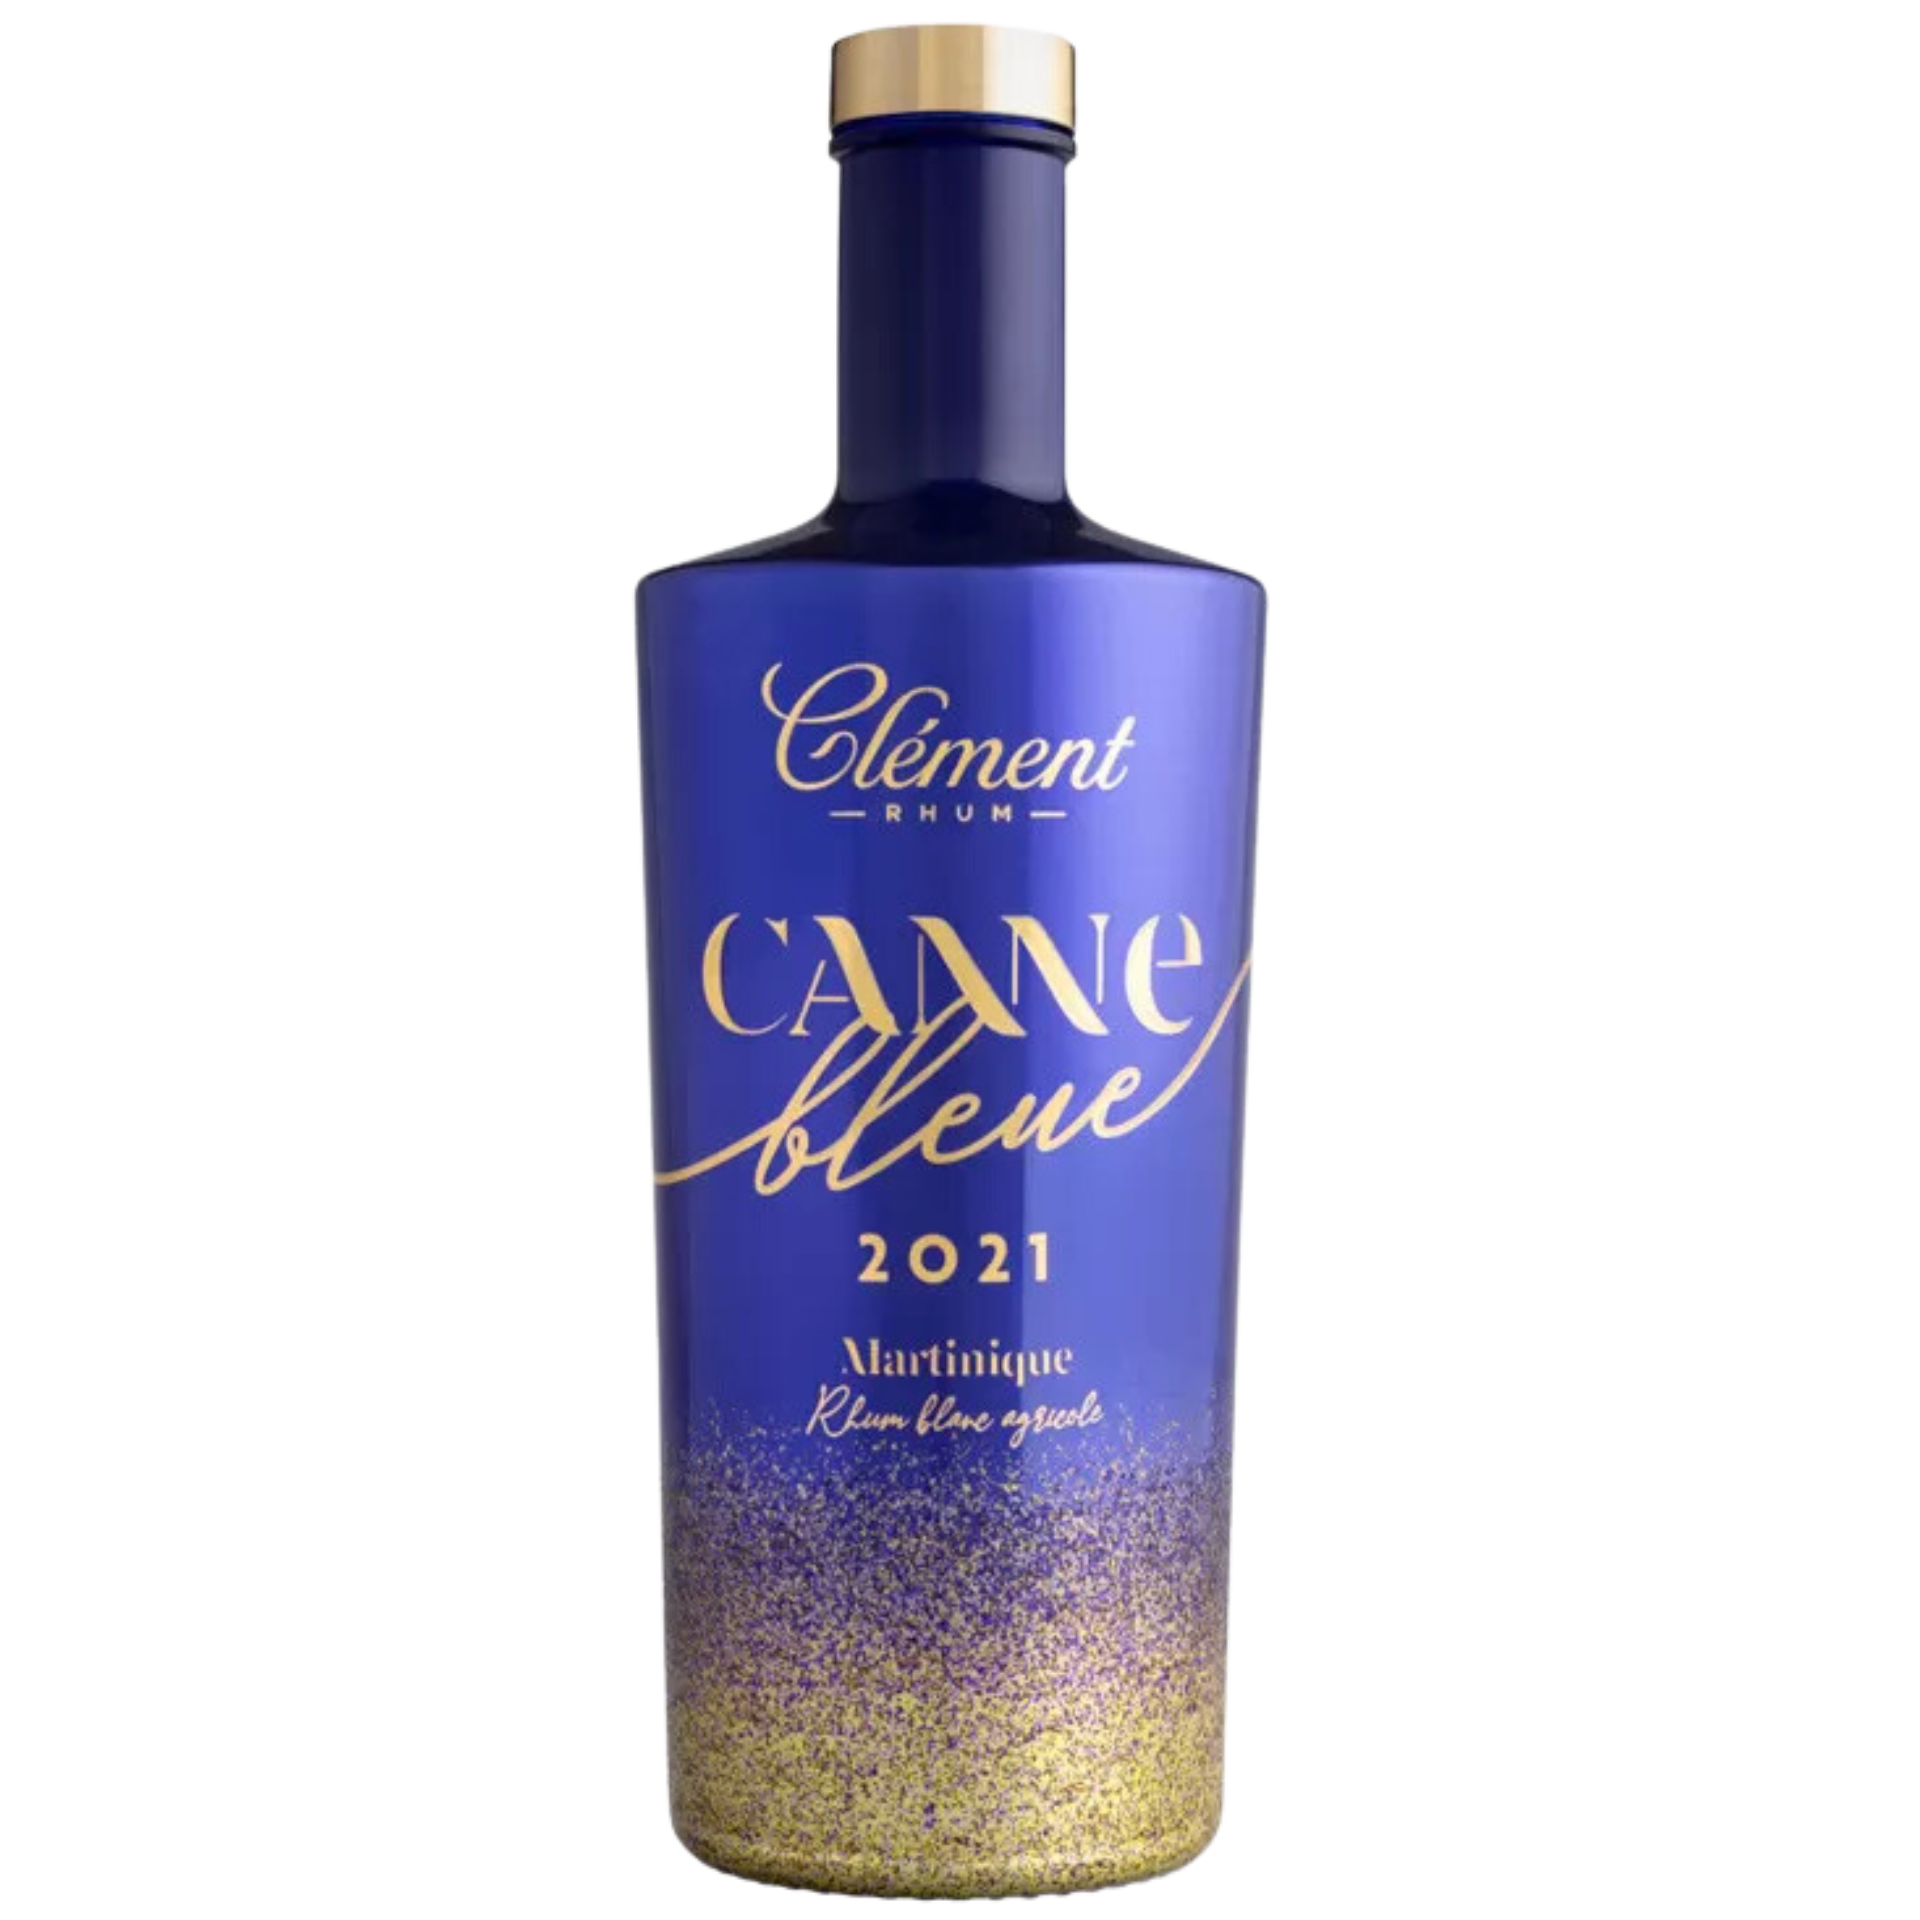 Clement Rhum Canne Bleue 2021 50% 0,7l